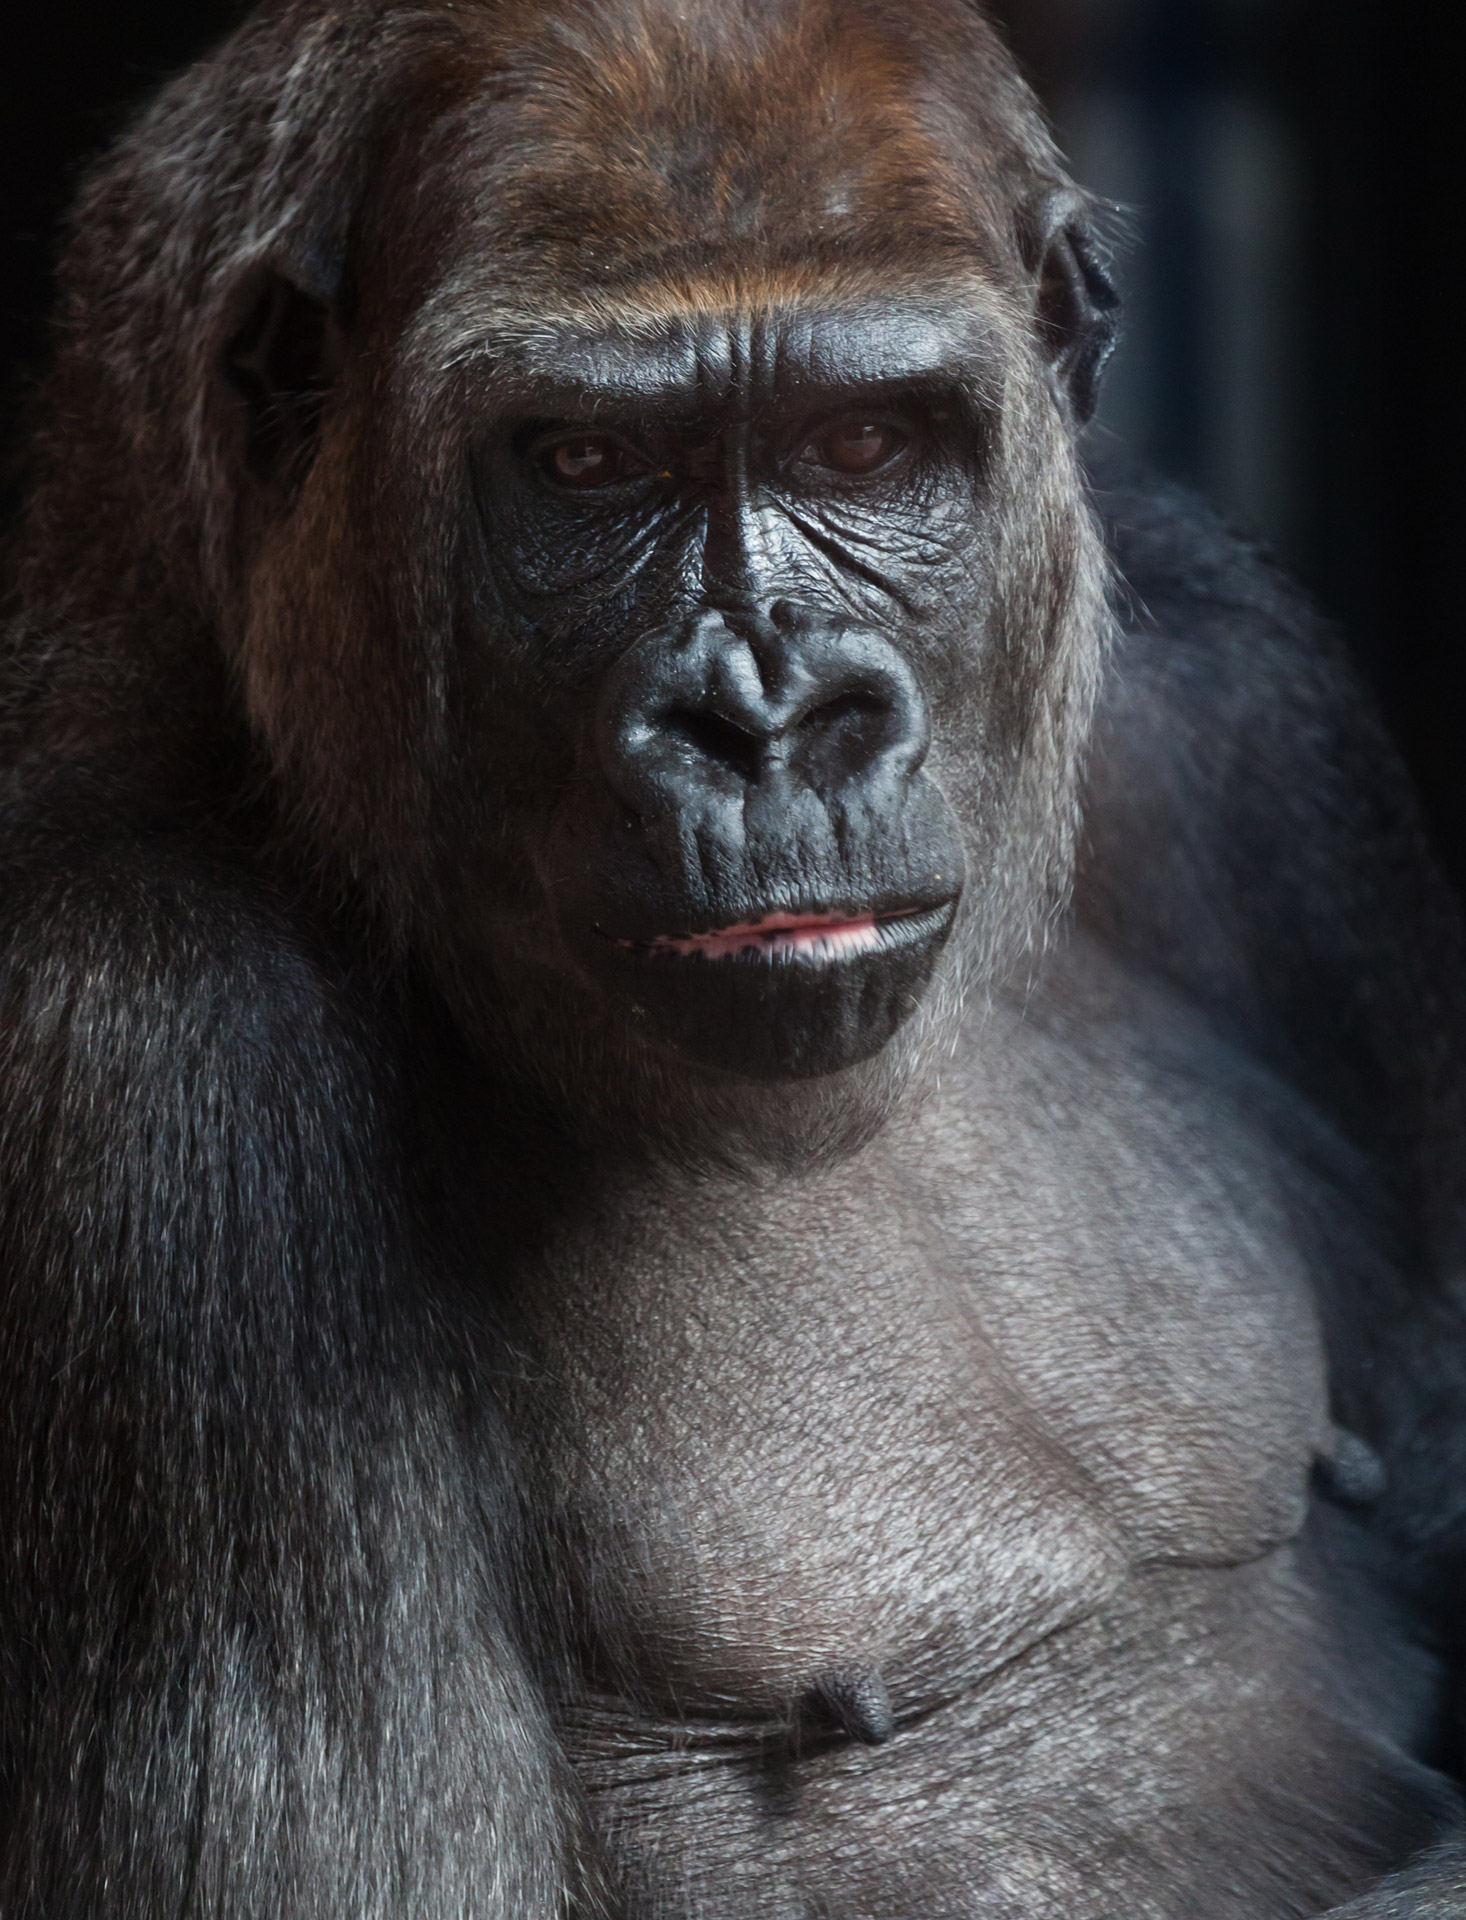 portrait of a gorilla on dark background